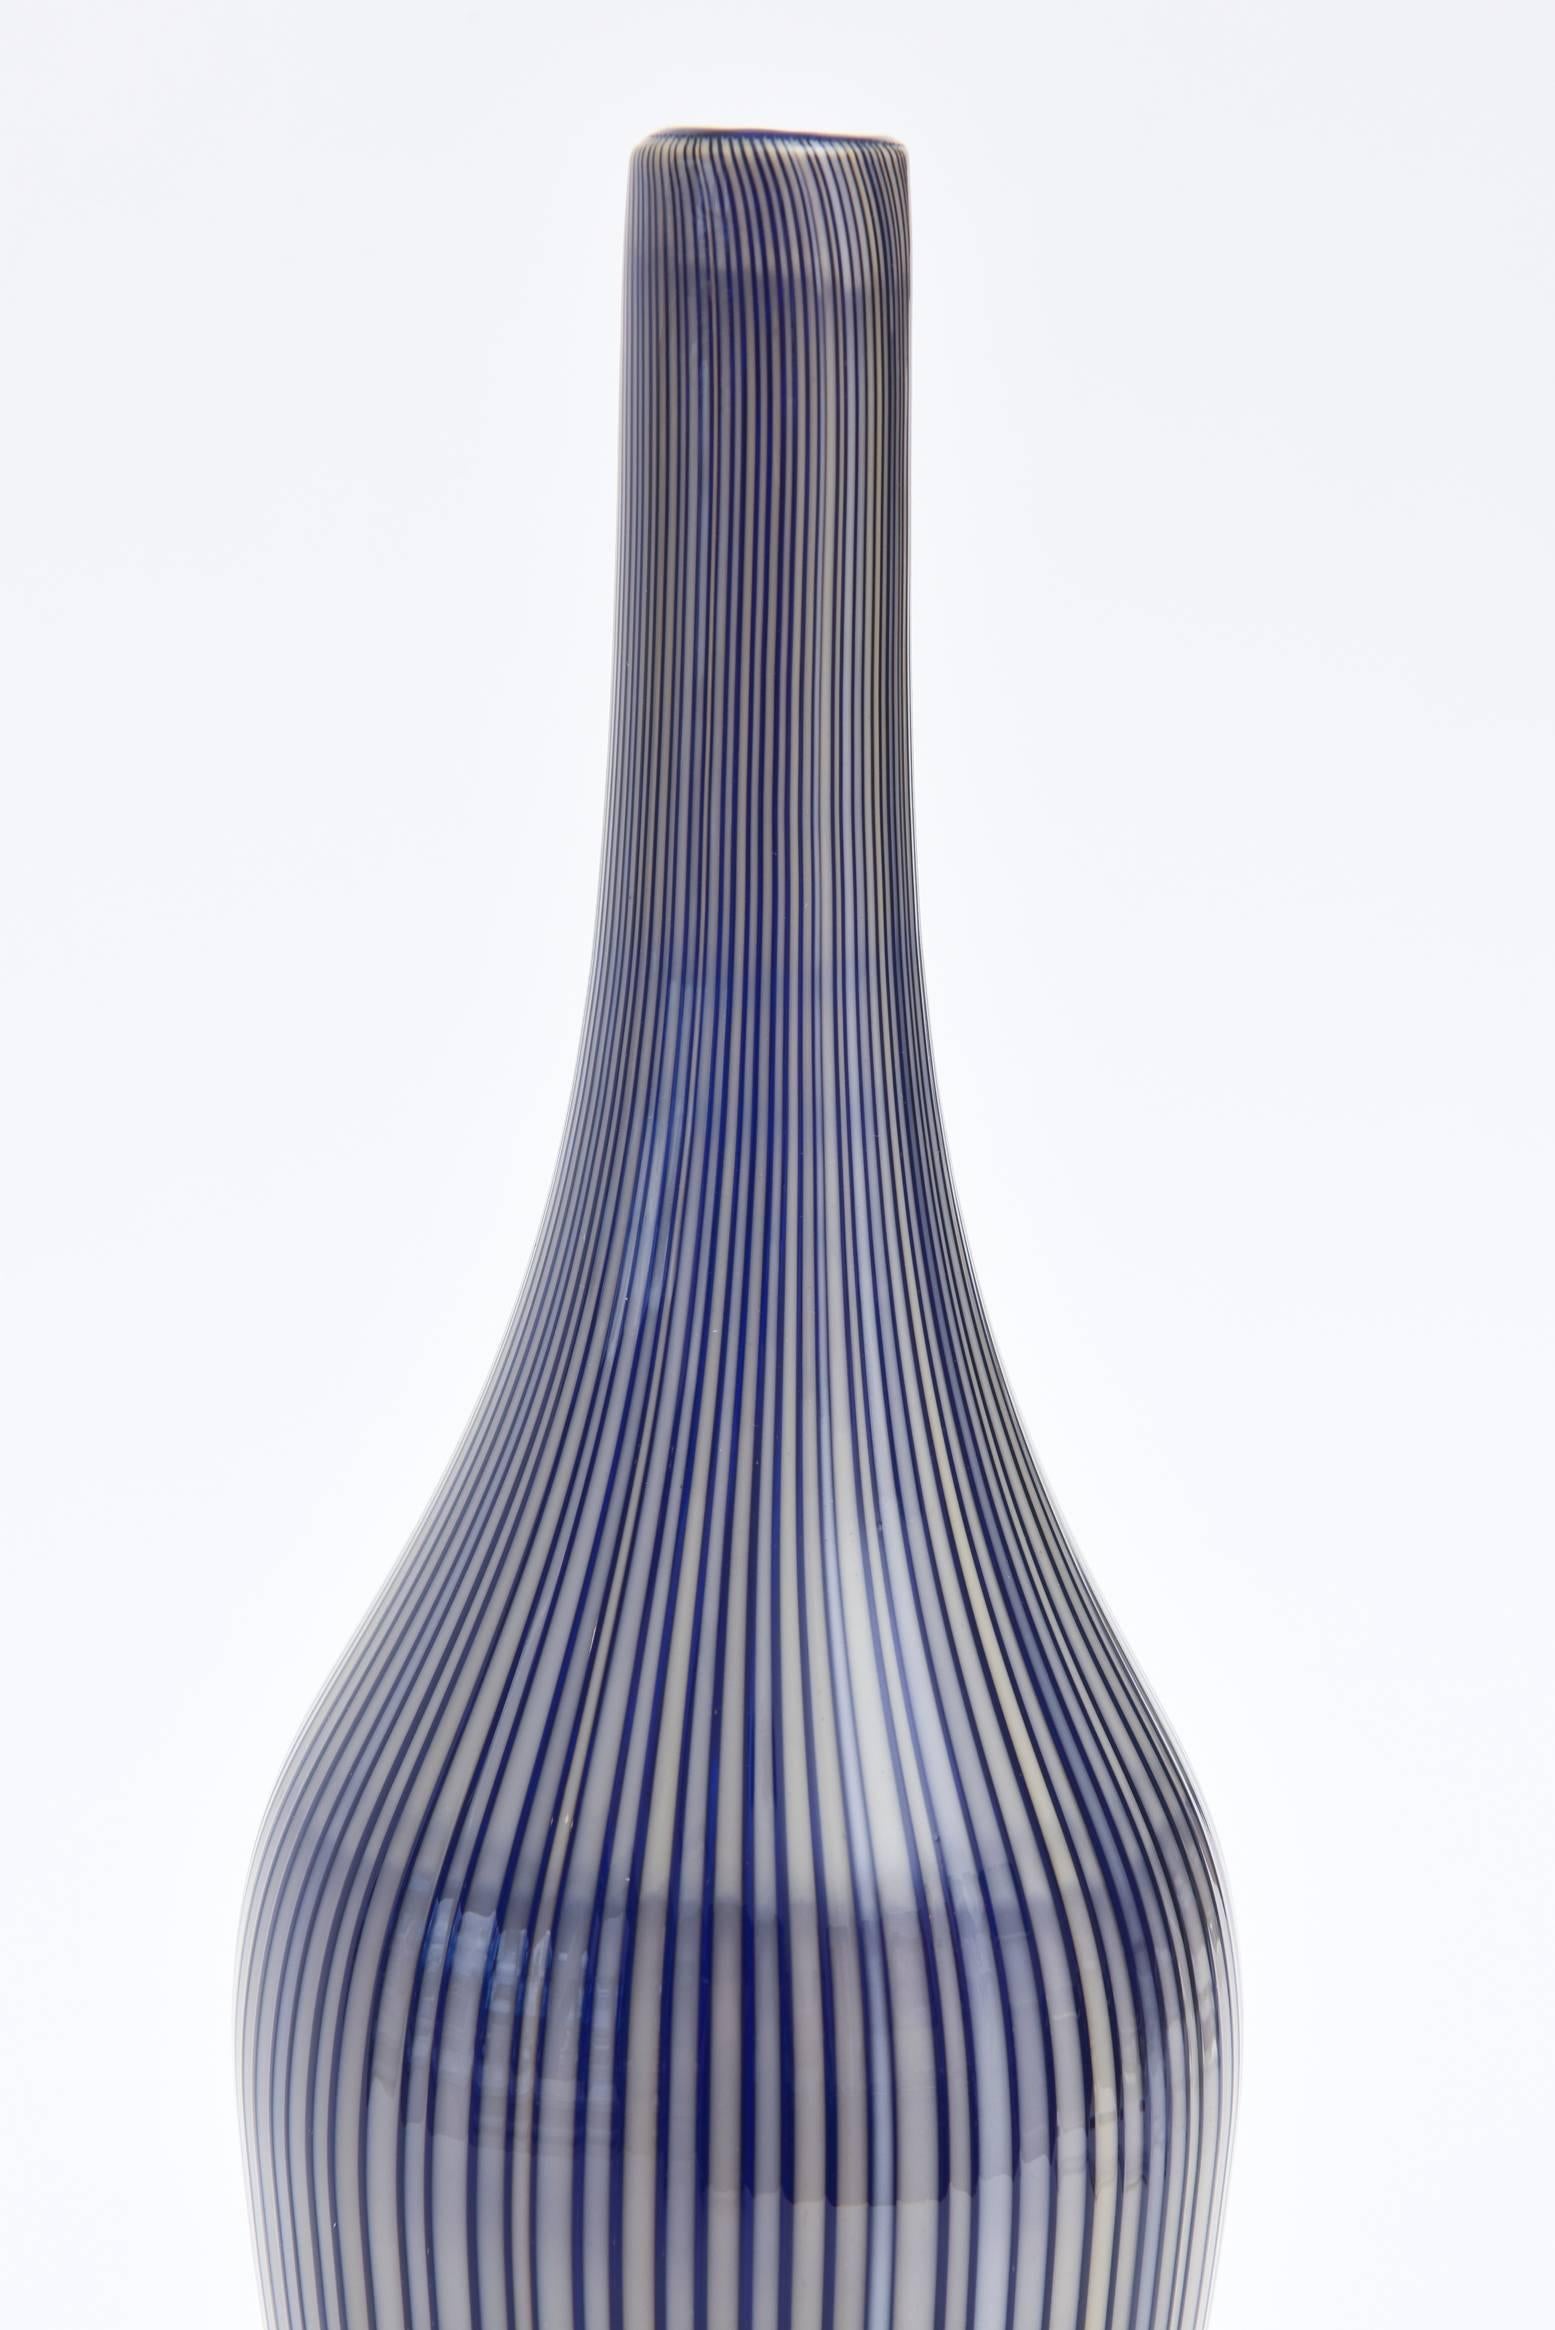 Murano Cenedese Striped Bottle, Vessel, Glass Sculpture In Good Condition In North Miami, FL